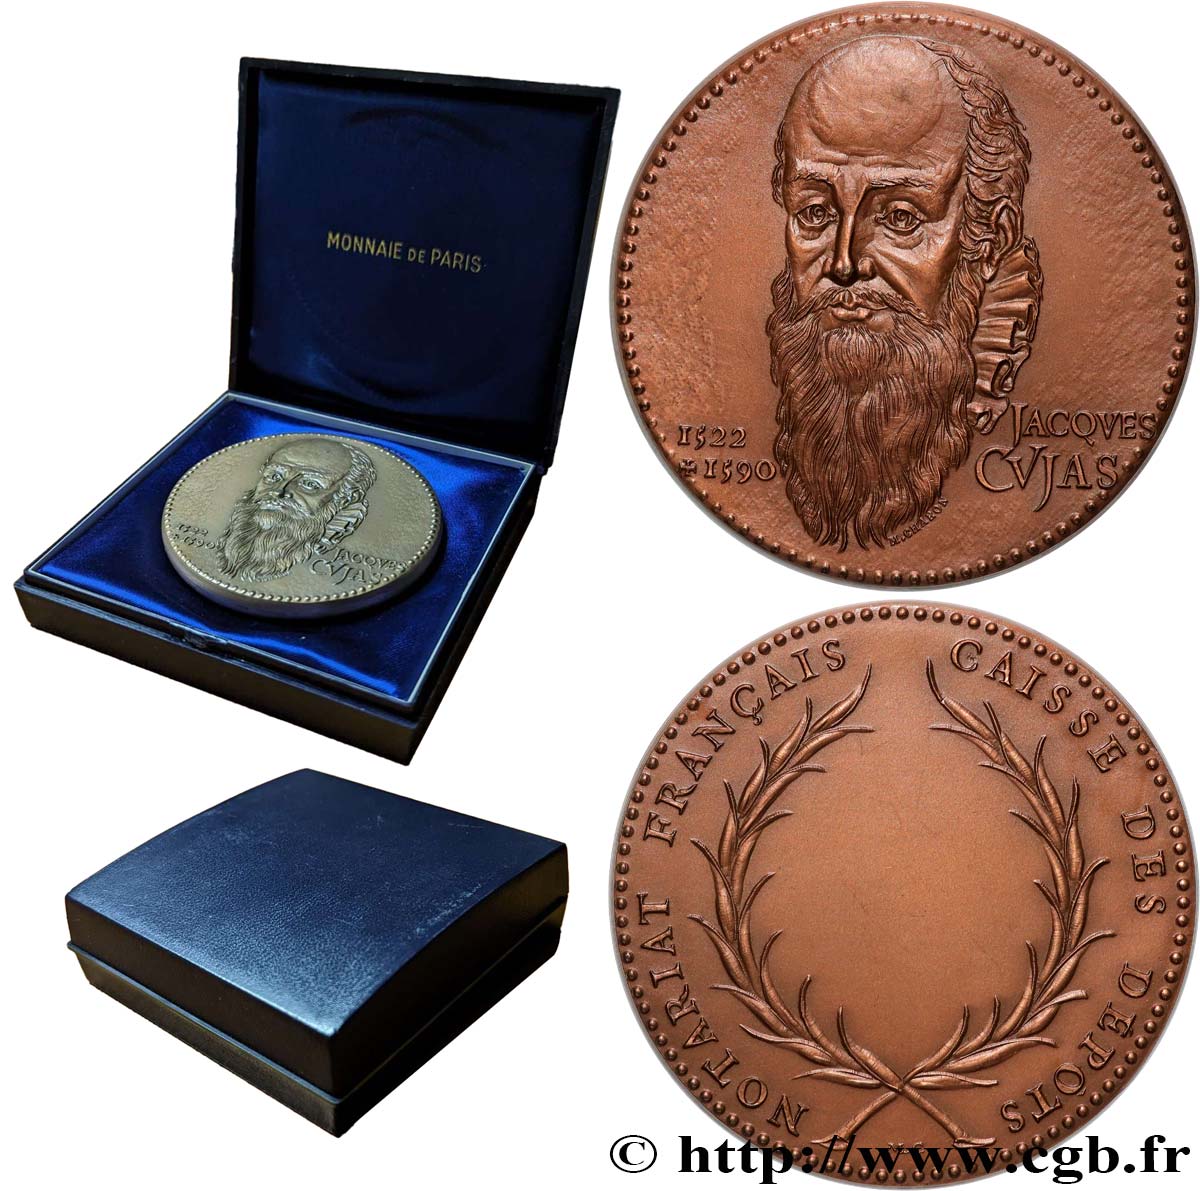 NOTAIRES DU XIXe SIECLE Médaille, Jacques Cujas, Notariat français, caisse des dépôts SUP